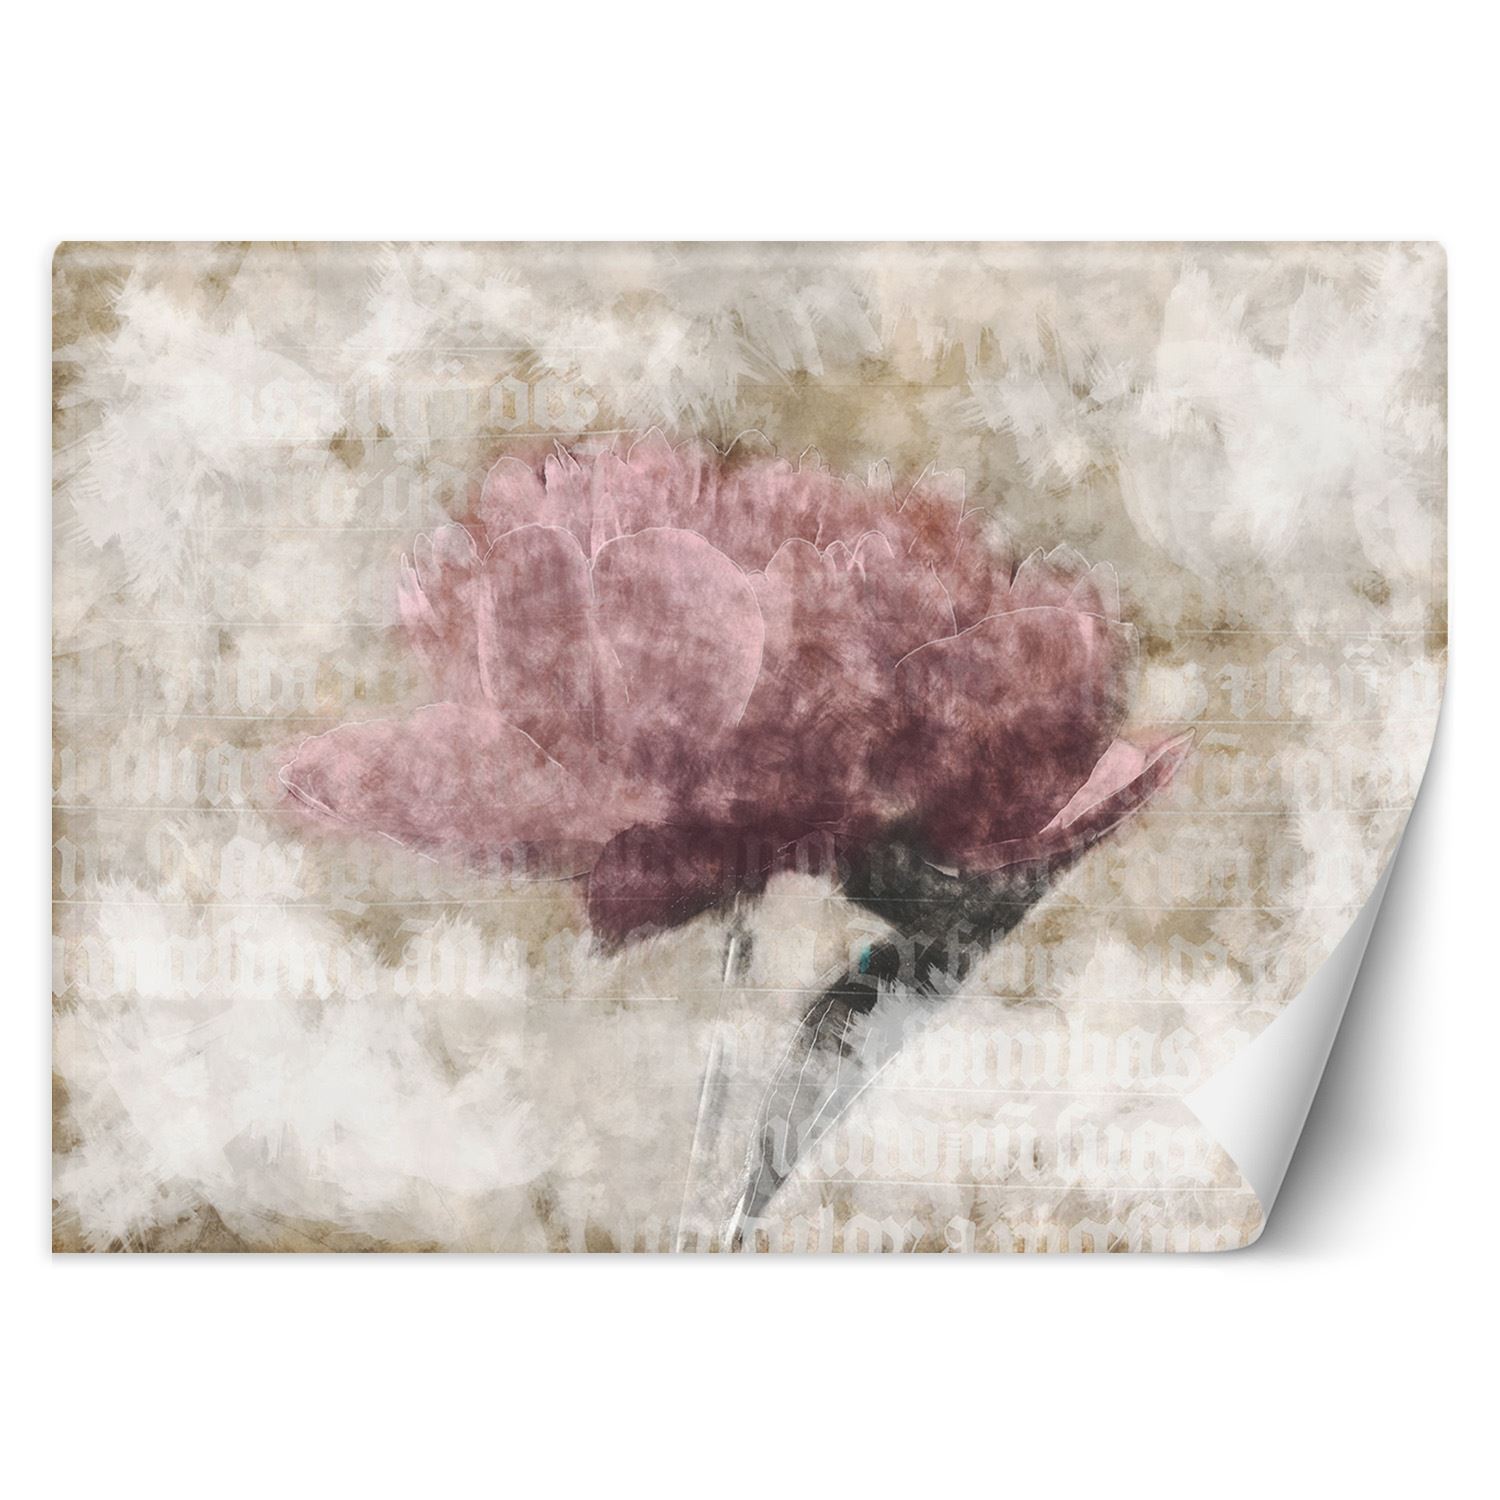 Trend24 – Behang – Abstracte Bloemen In Pastelkleuren – Vliesbehang – Fotobehang 3D – Behang Woonkamer – 350×245 cm – Incl. behanglijm